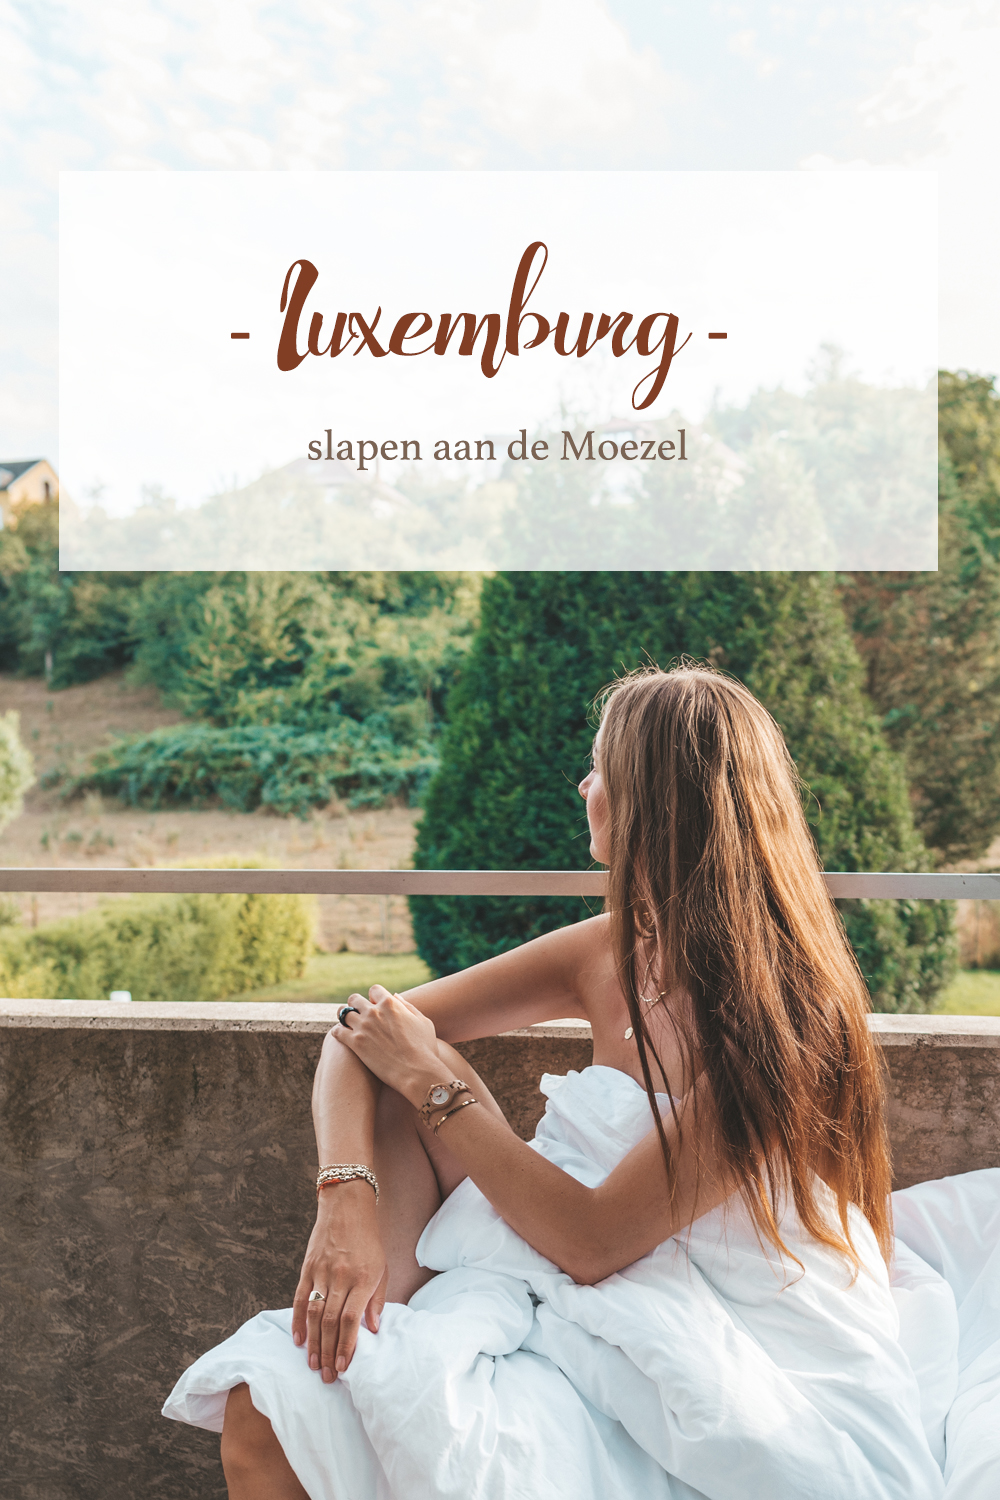 Luxemburg slapen aan de Moezel